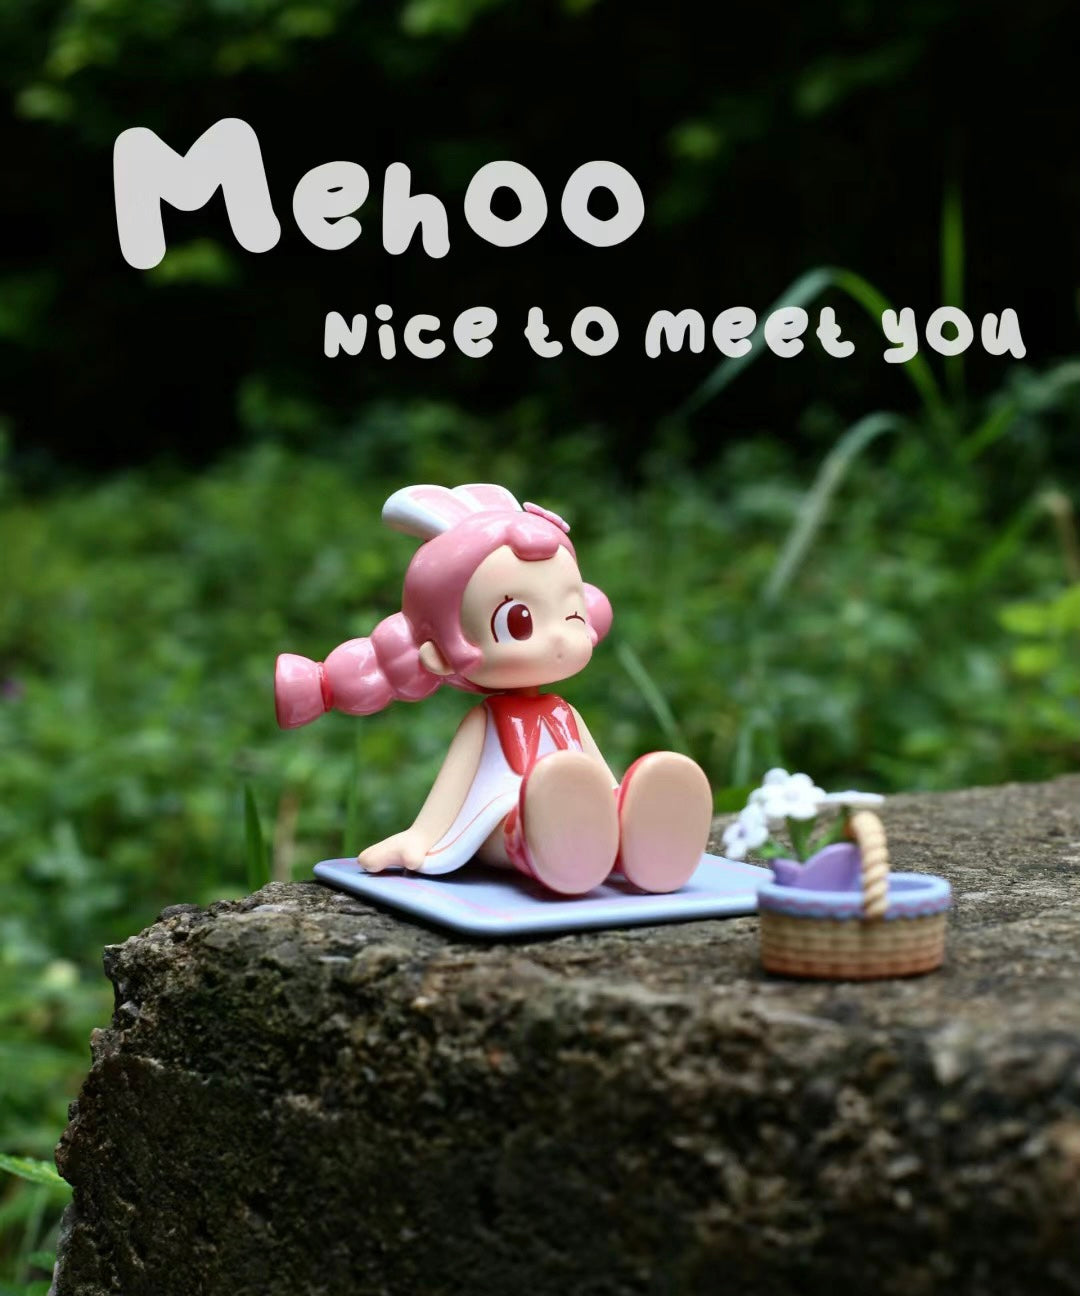 Mehoo nice to meet you cute series DIY